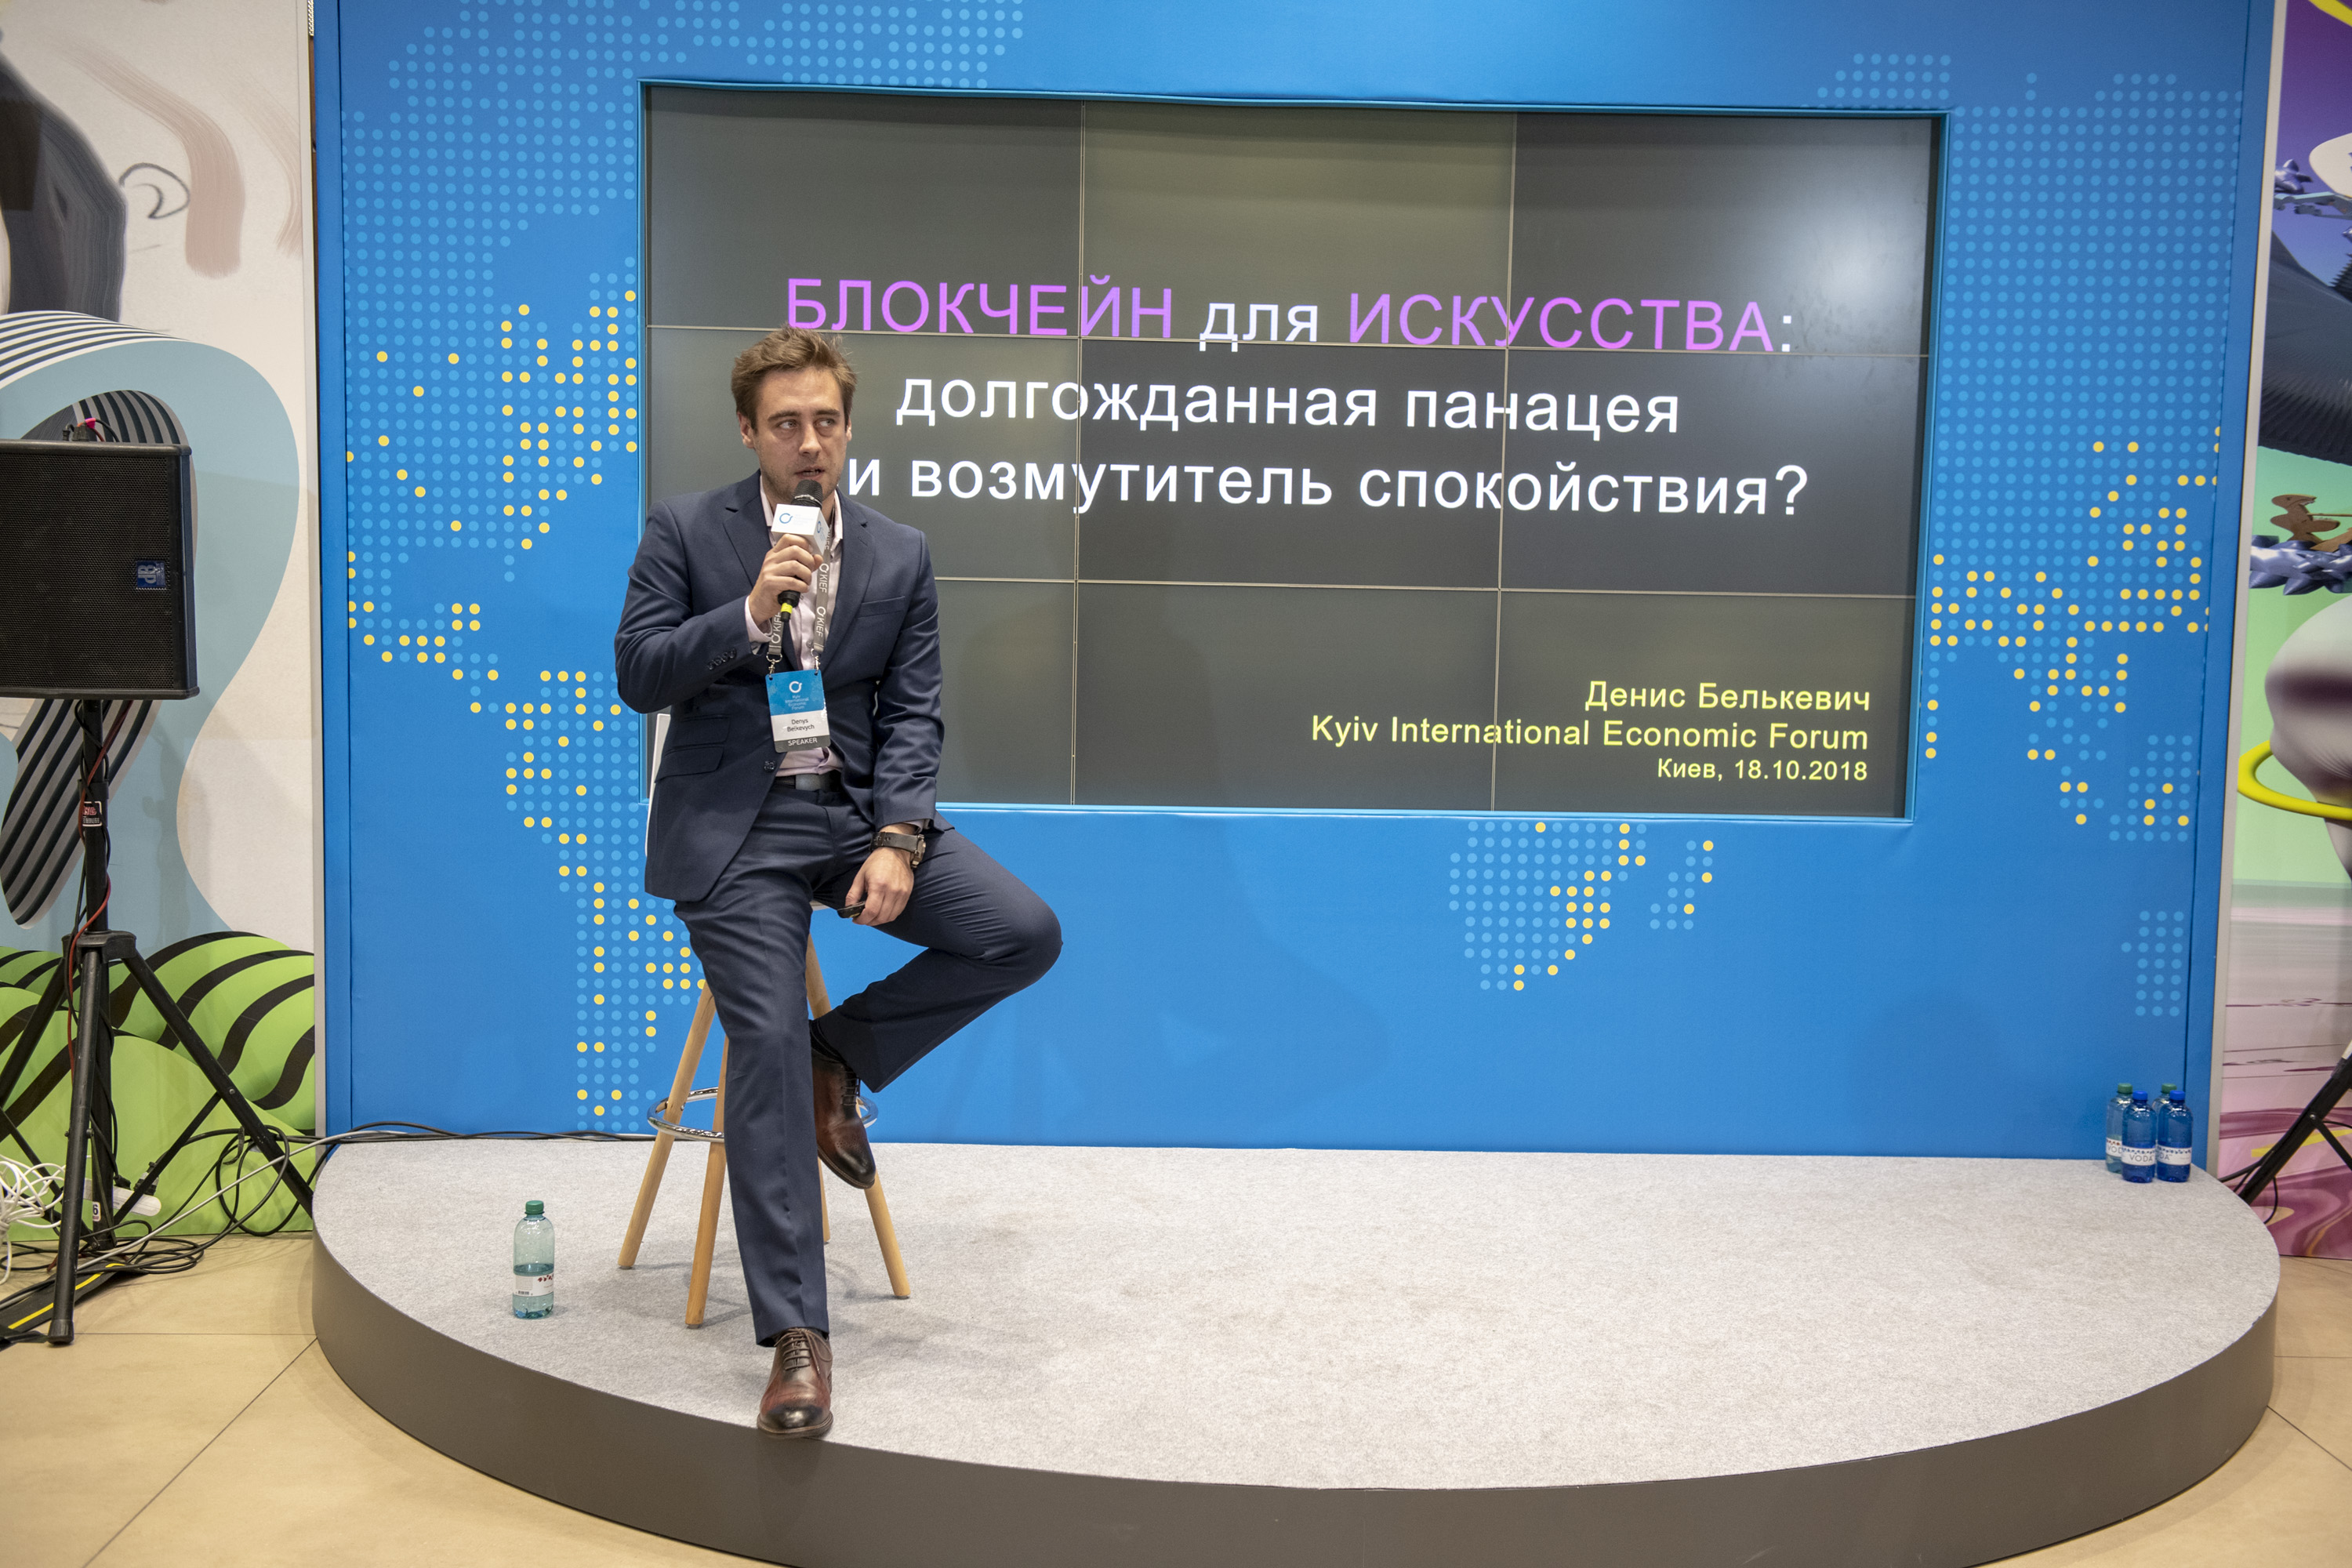 KIEF 2018. Public Talk with Denys Belkevych